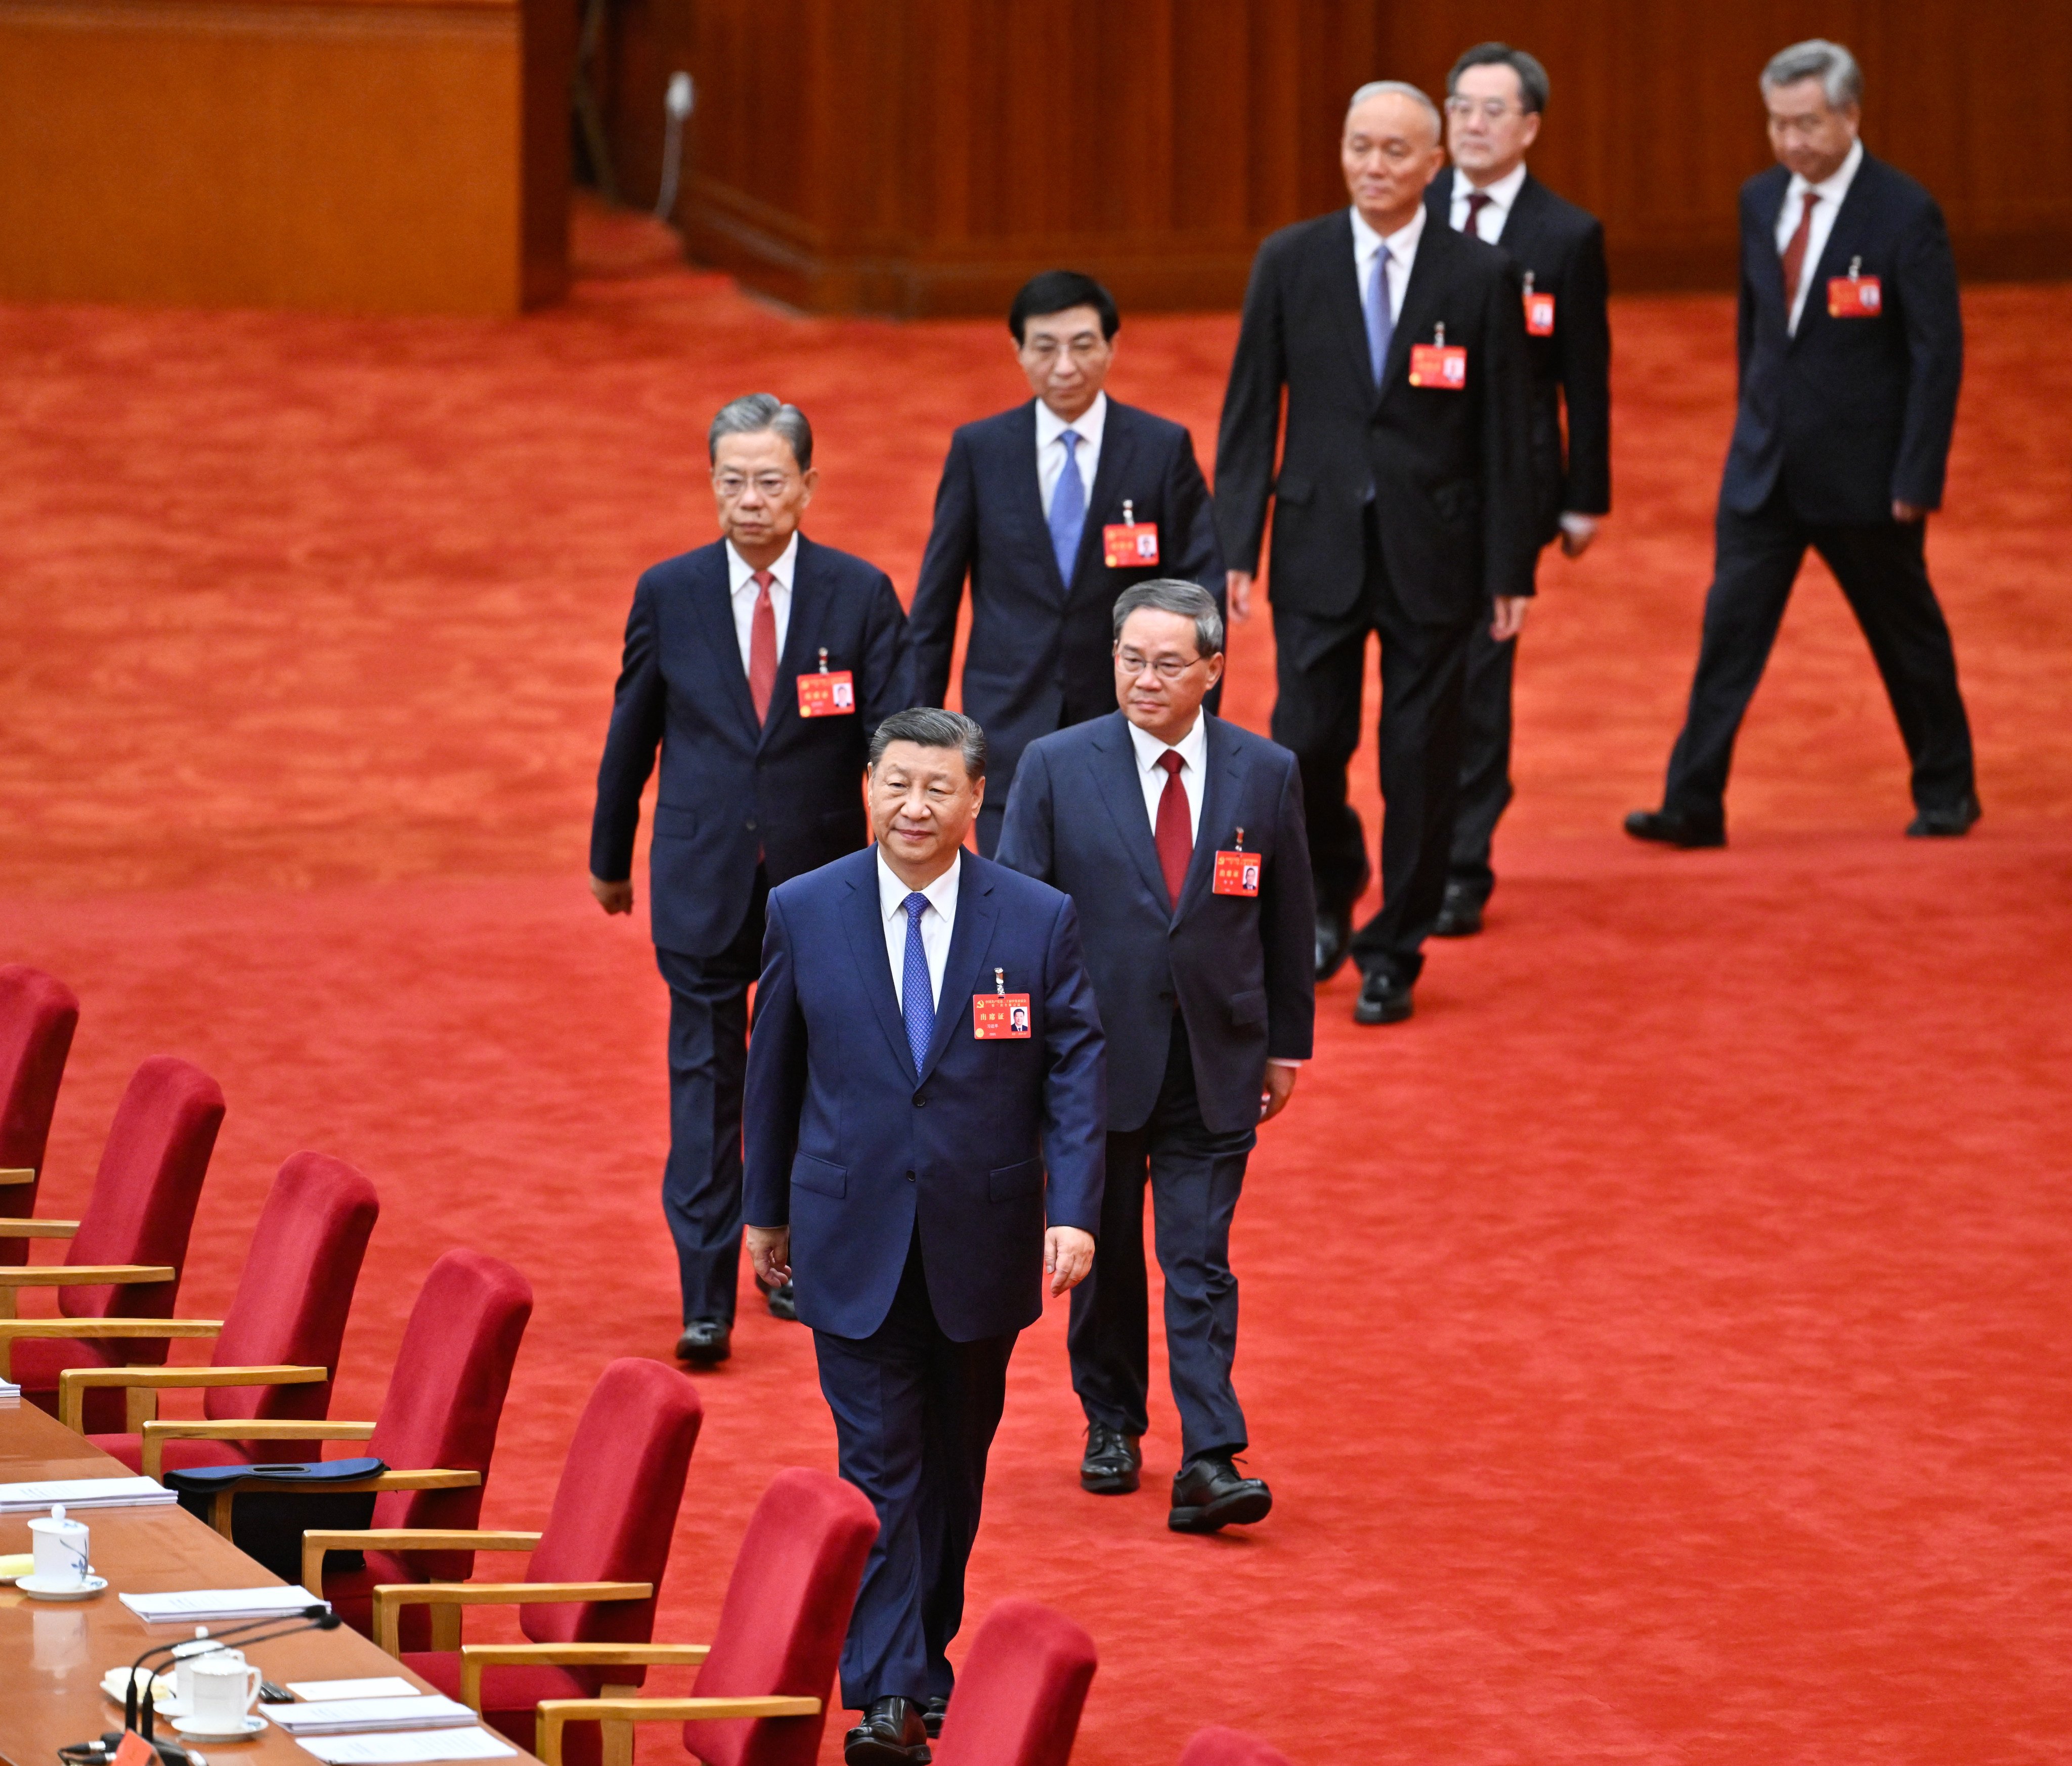 Xi Jinping, Li Qiang, Zhao Leji, Wang Huning, Cai Qi, Ding Xuexiang and Li Xi arrive to attend the Central Committee’s third plenary session in Beijing. Photo: Xinhua